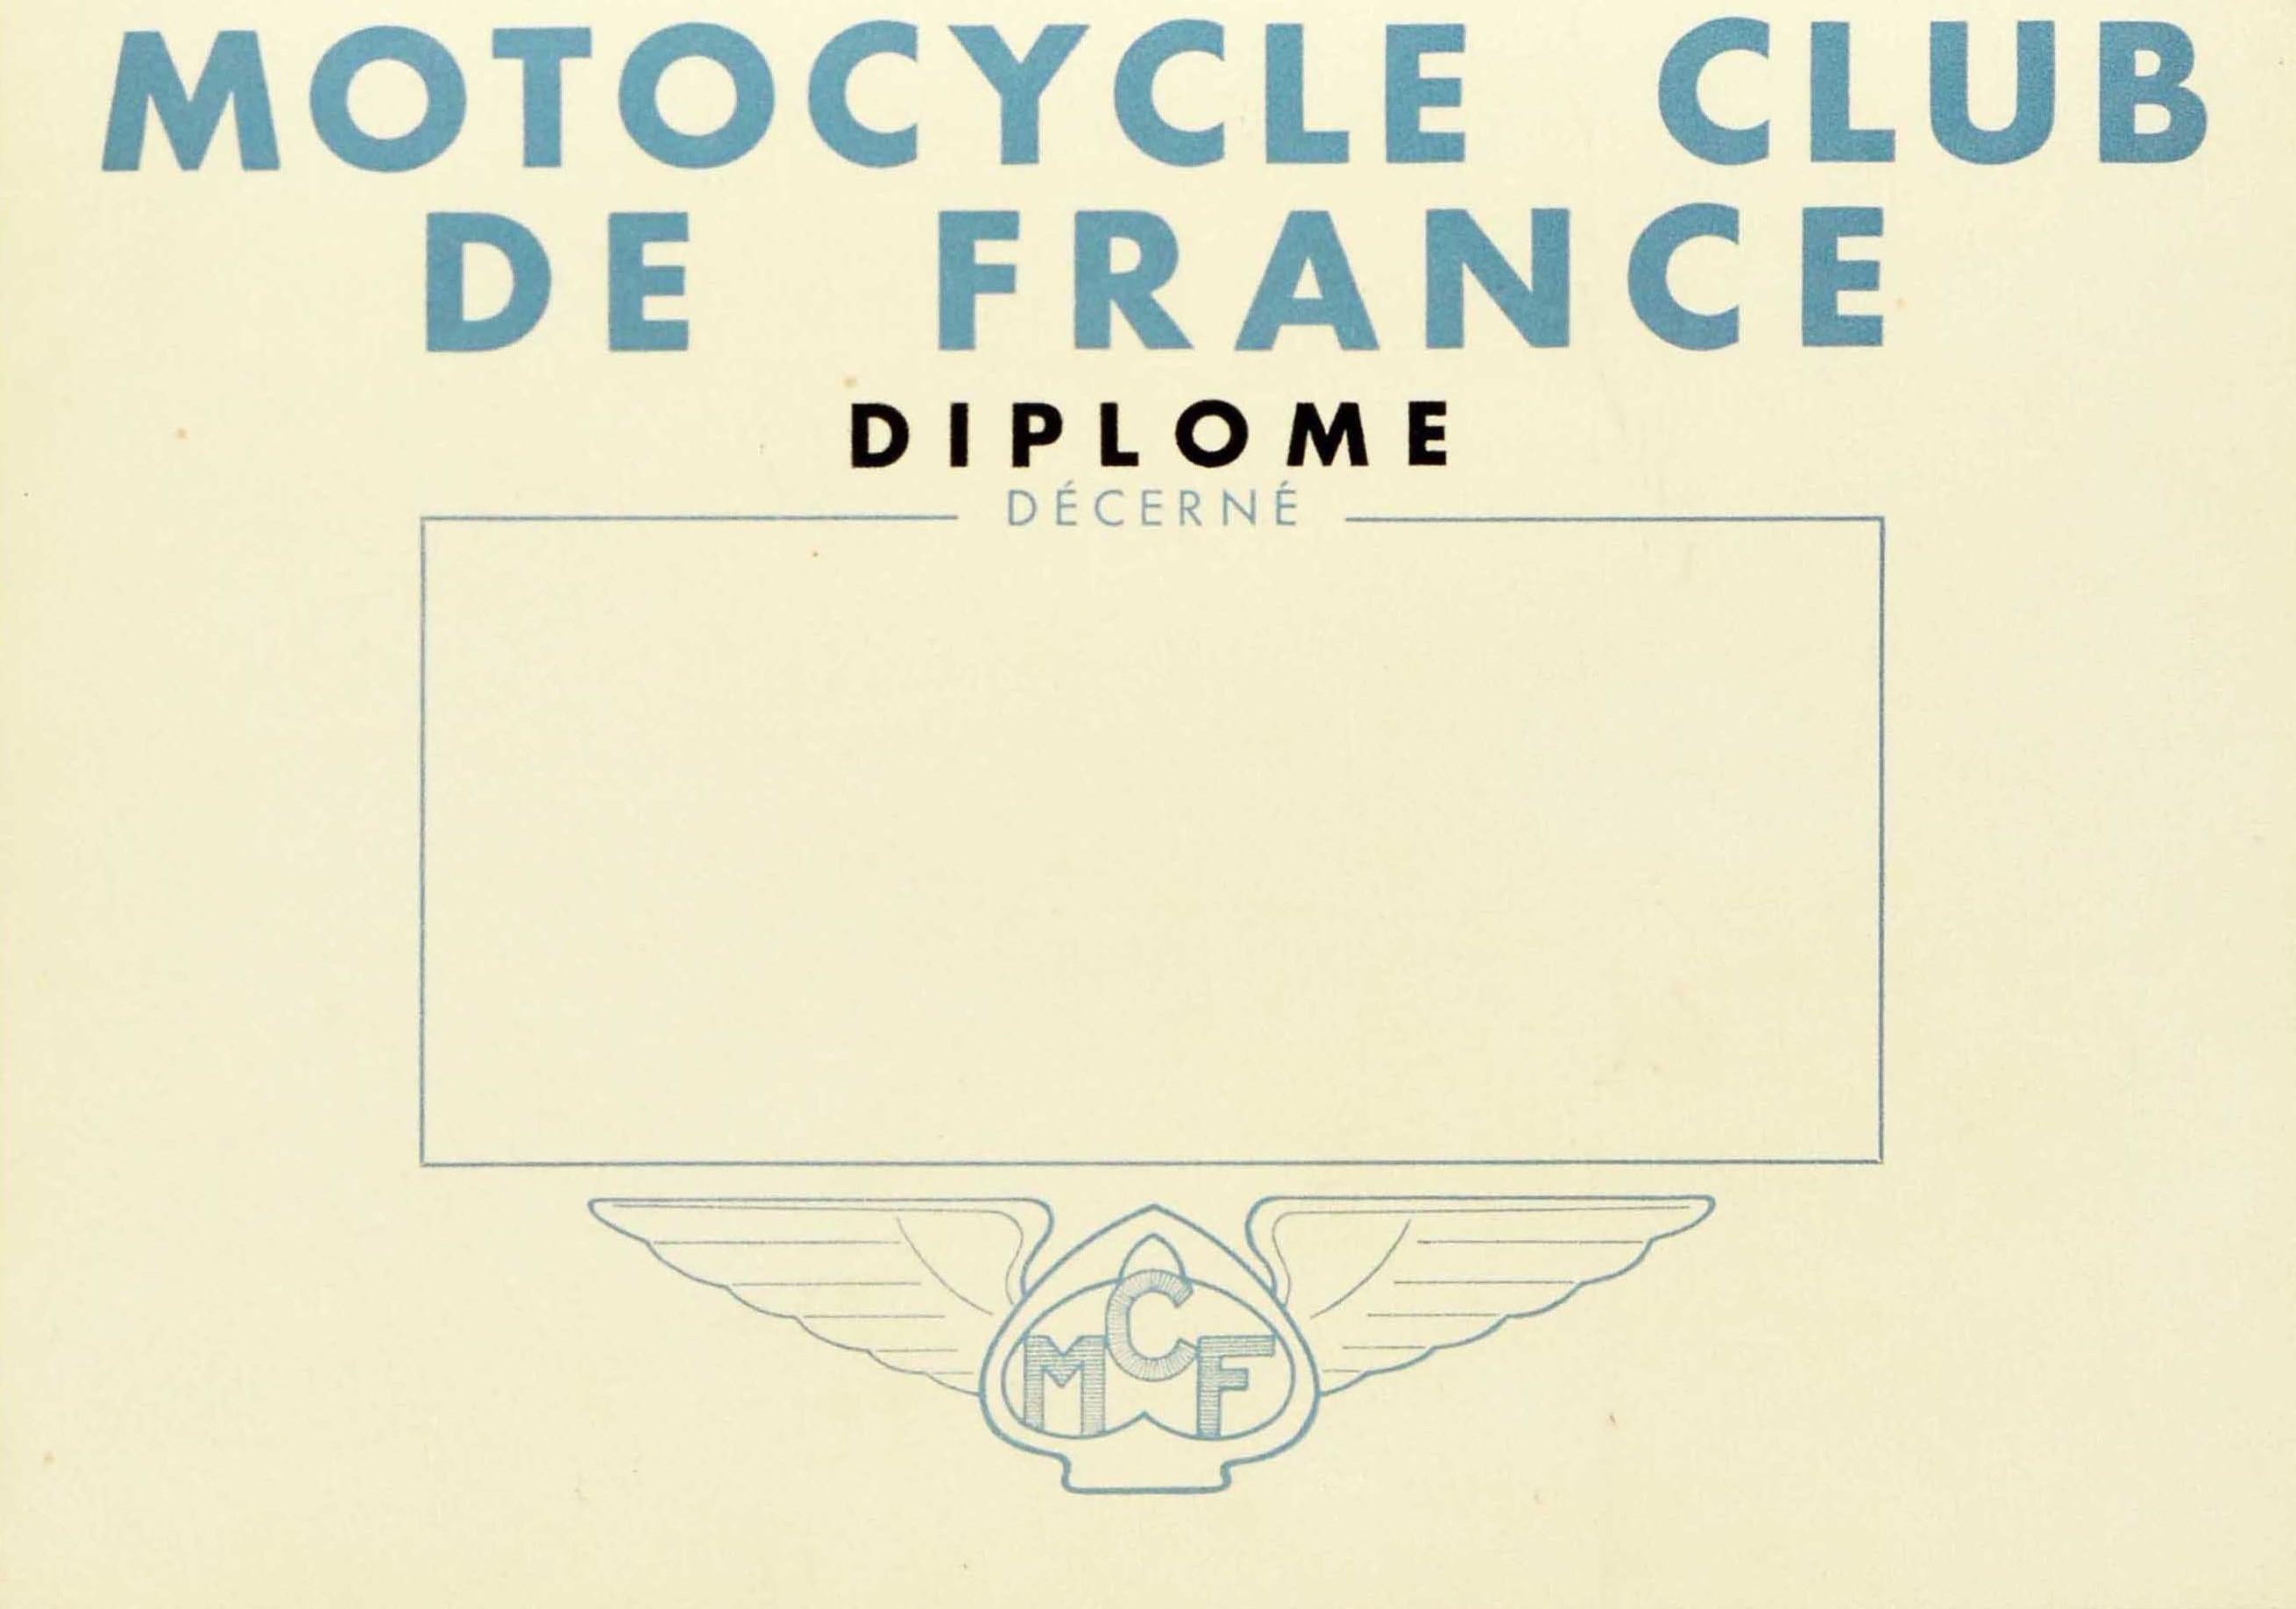 Affiche originale de remise de diplôme de sport automobile - Motocycle Club de France Diplôme Decerne MCF - comportant une illustration dynamique de Geo Ham (Georges Hamel ; 1900-1972) représentant un motocycliste avec un casque et des lunettes